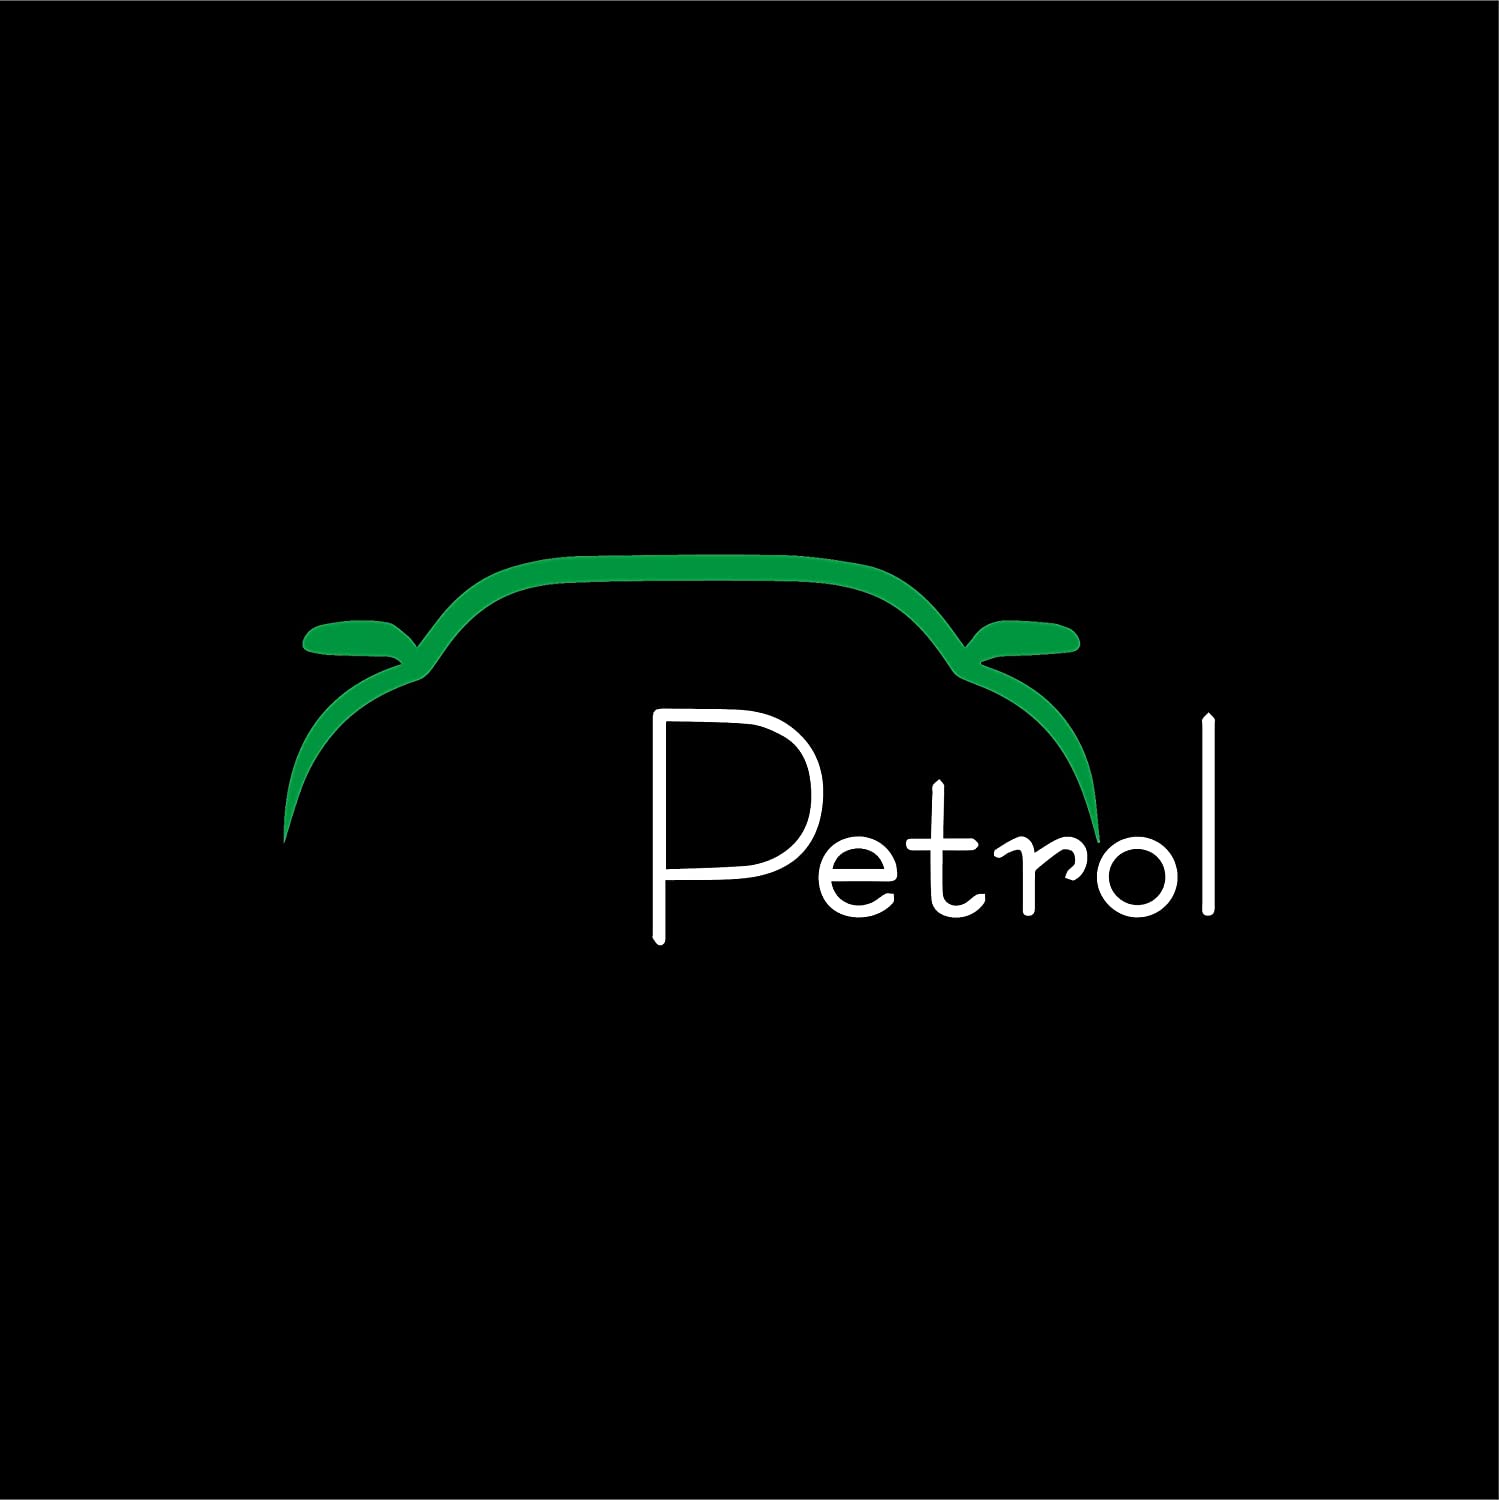 Petrol Sticker logo Car Sticker